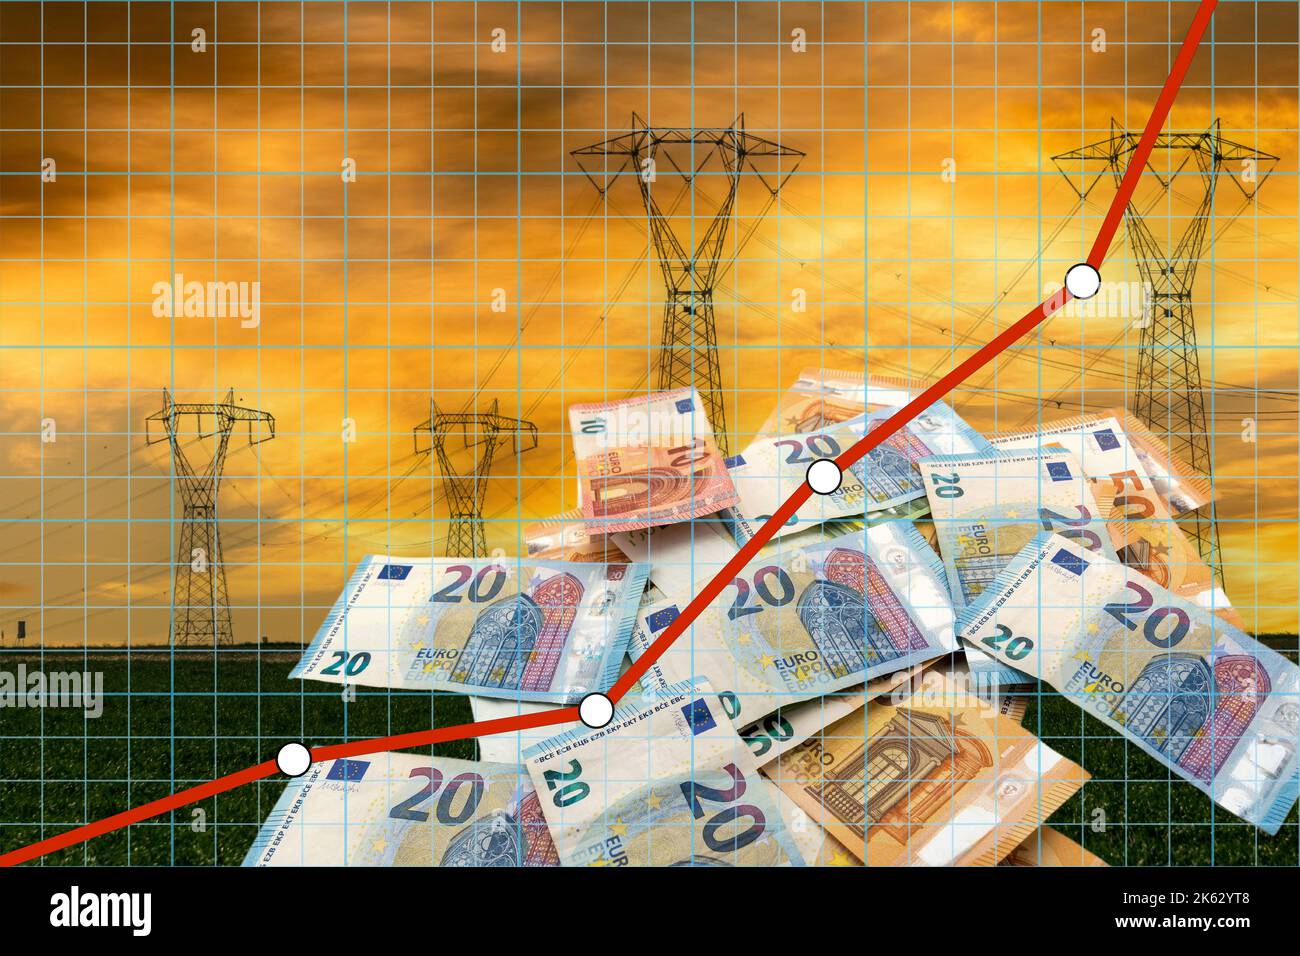 Résumé graphique financier avec prix de l'électricité de ligne en hausse sur les billets en euros et les pylônes d'électricité au coucher du soleil. Augmentation exponentielle du concept dans energ Banque D'Images